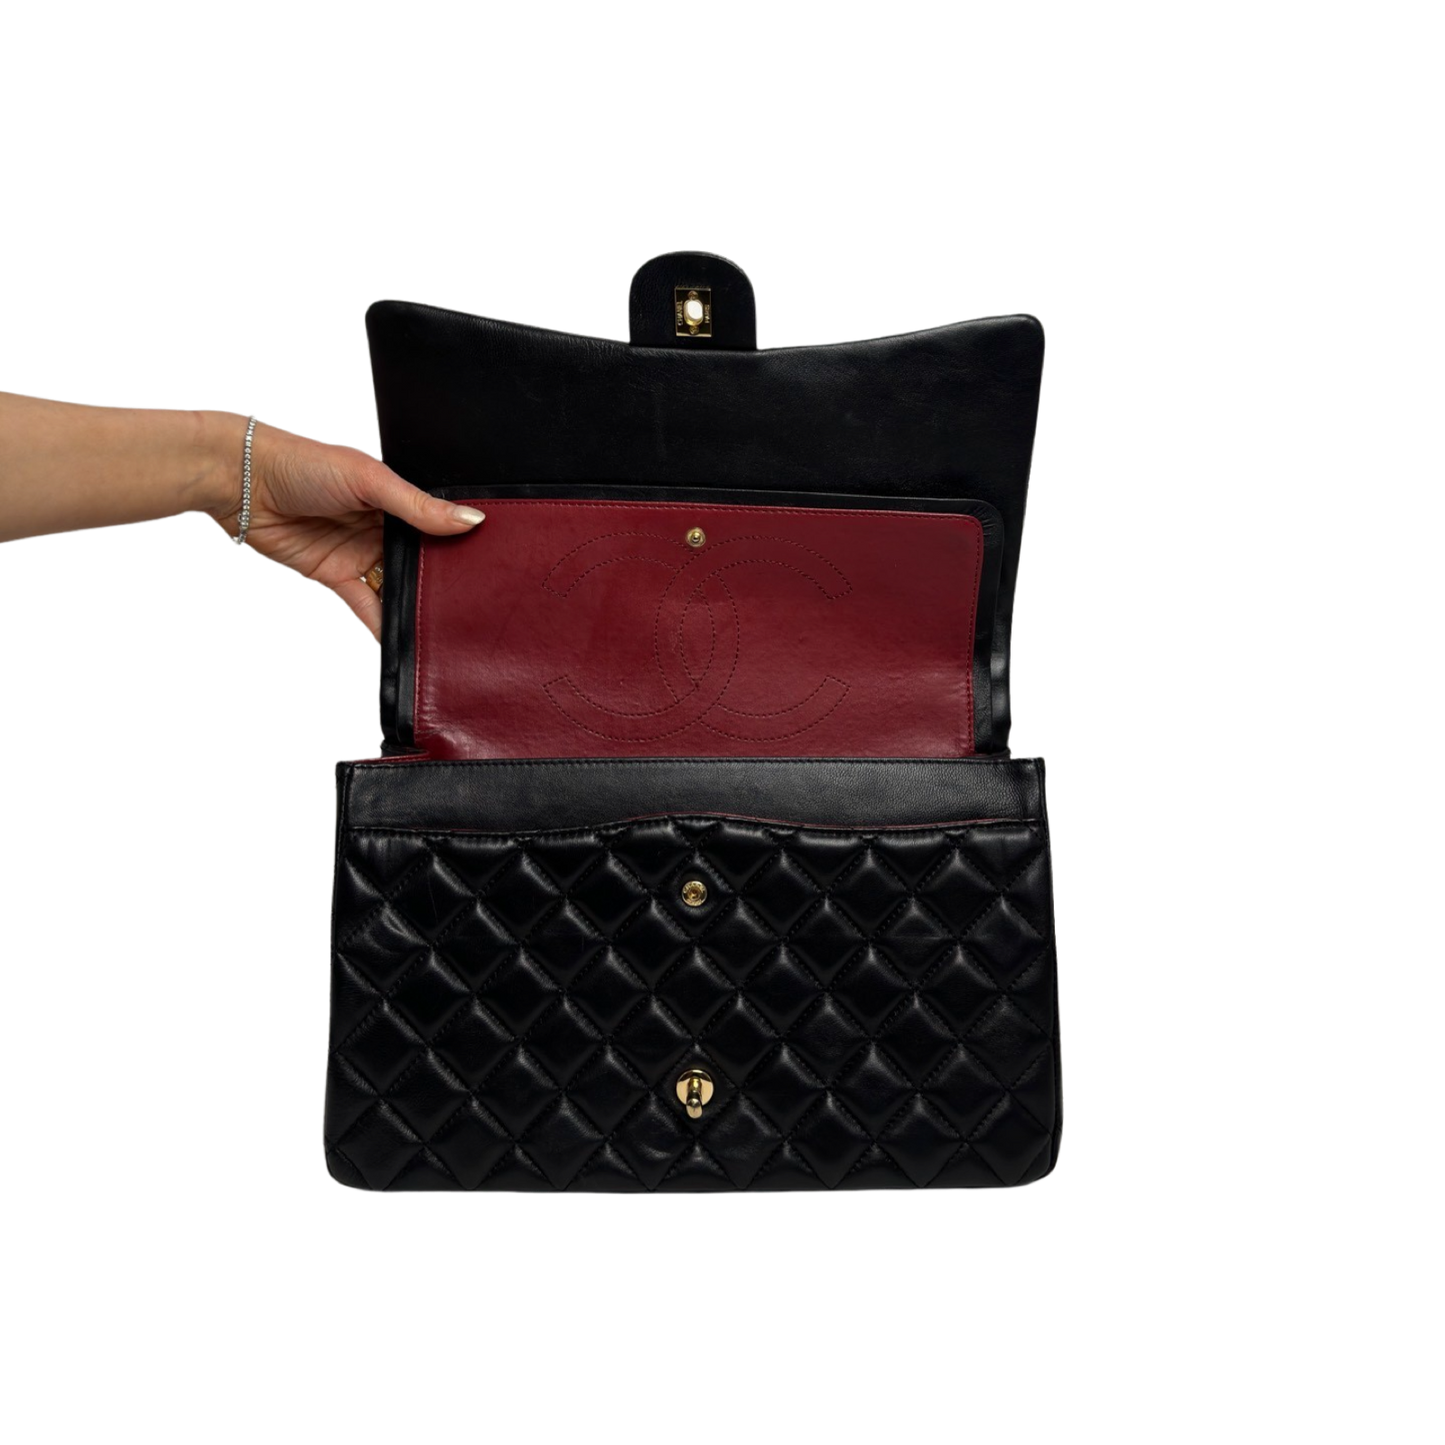 Chanel Jumbo Classic Double Flap Leather Bag